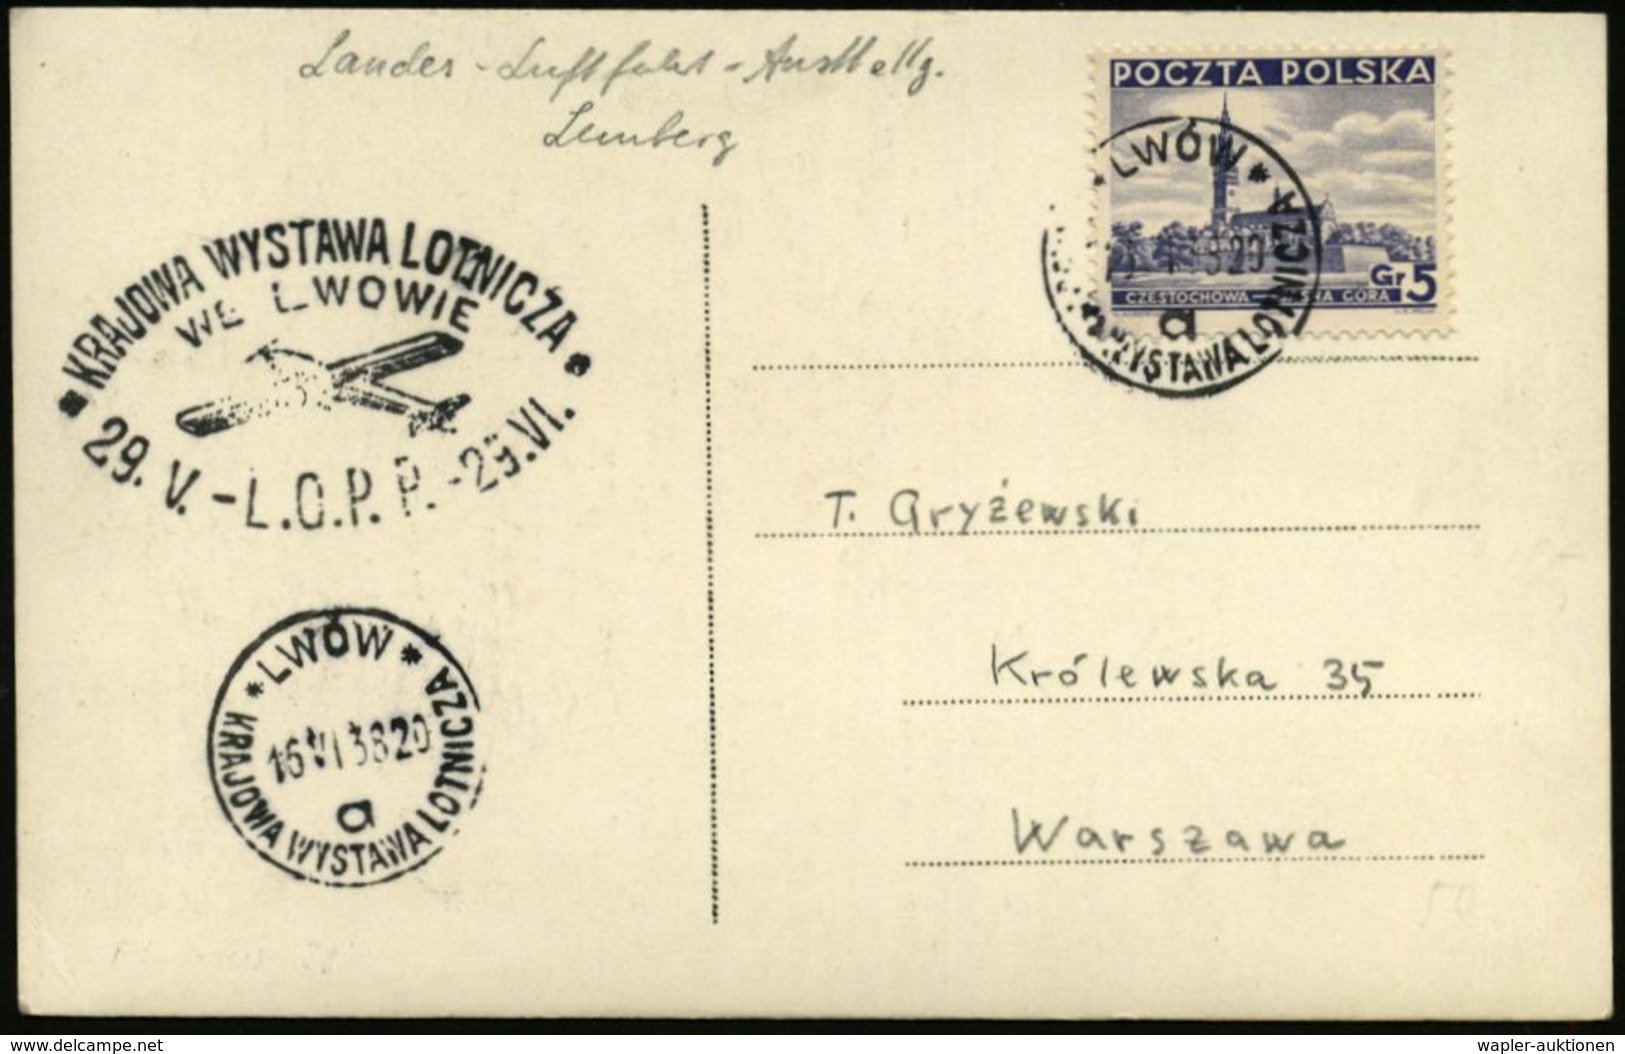 LUFTFAHRT-AUSSTELLUNGEN & KONGRESSE : POLEN 1938 (16.4.) SSt: LWOW/a/KRAJOWA WYSTAWA LOTNICZA (Luftfahrt-Ausst. Lemberg) - Airplanes